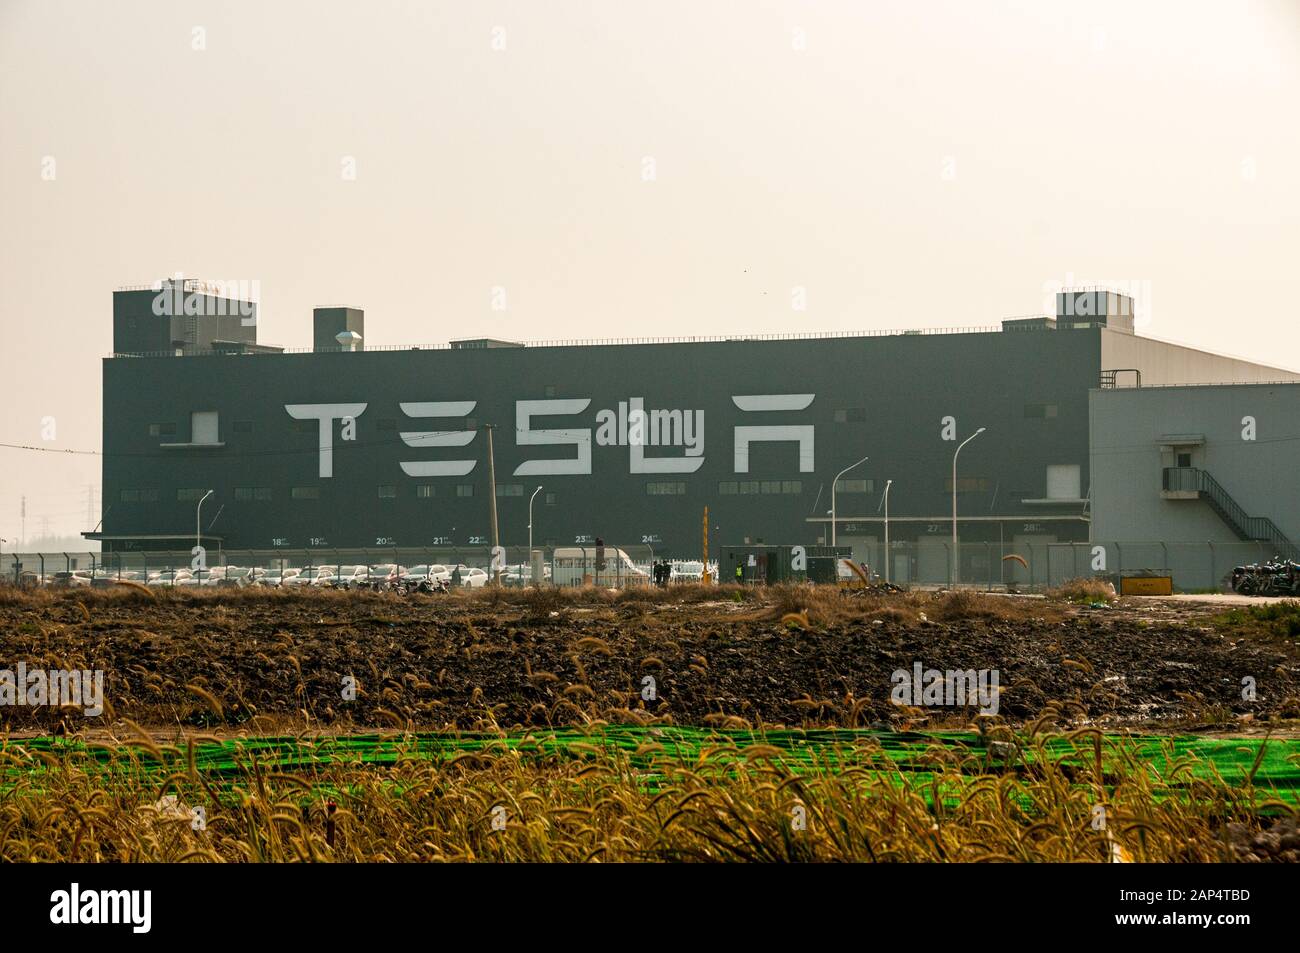 Tesla-Schild auf der Breitseite der chinesischen Fabrik - die Längsseite erstreckt sich etwa einen Kilometer. Stockfoto